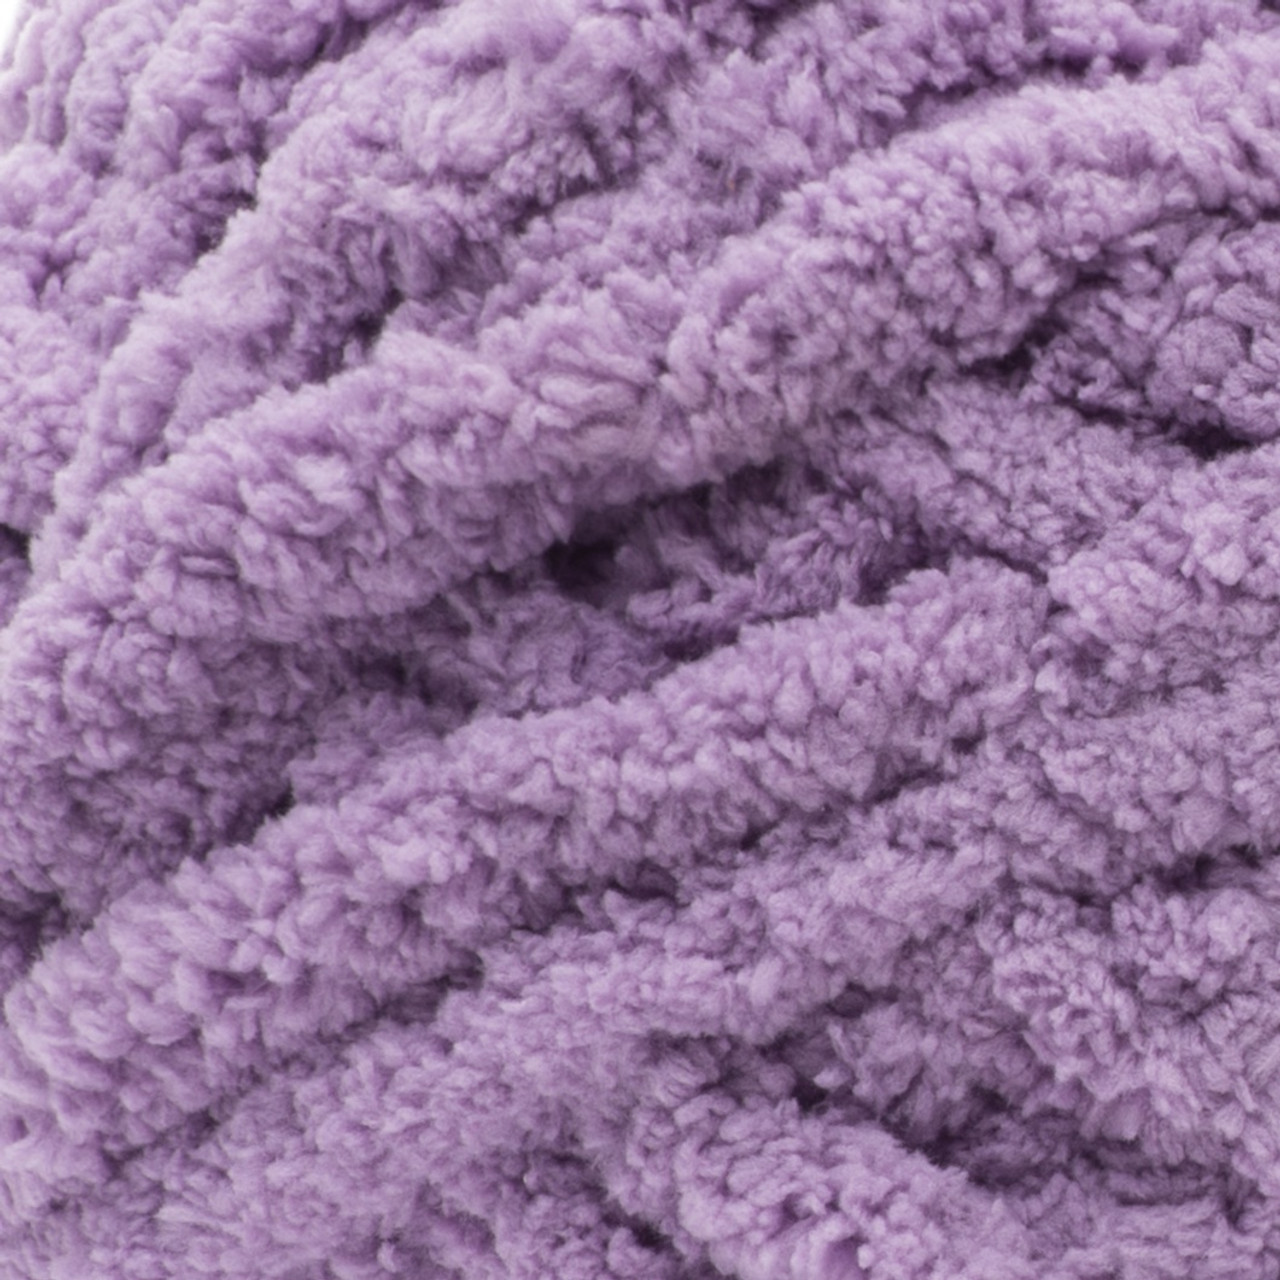 Bernat Blanket Extra Yarn, Vapor Gray